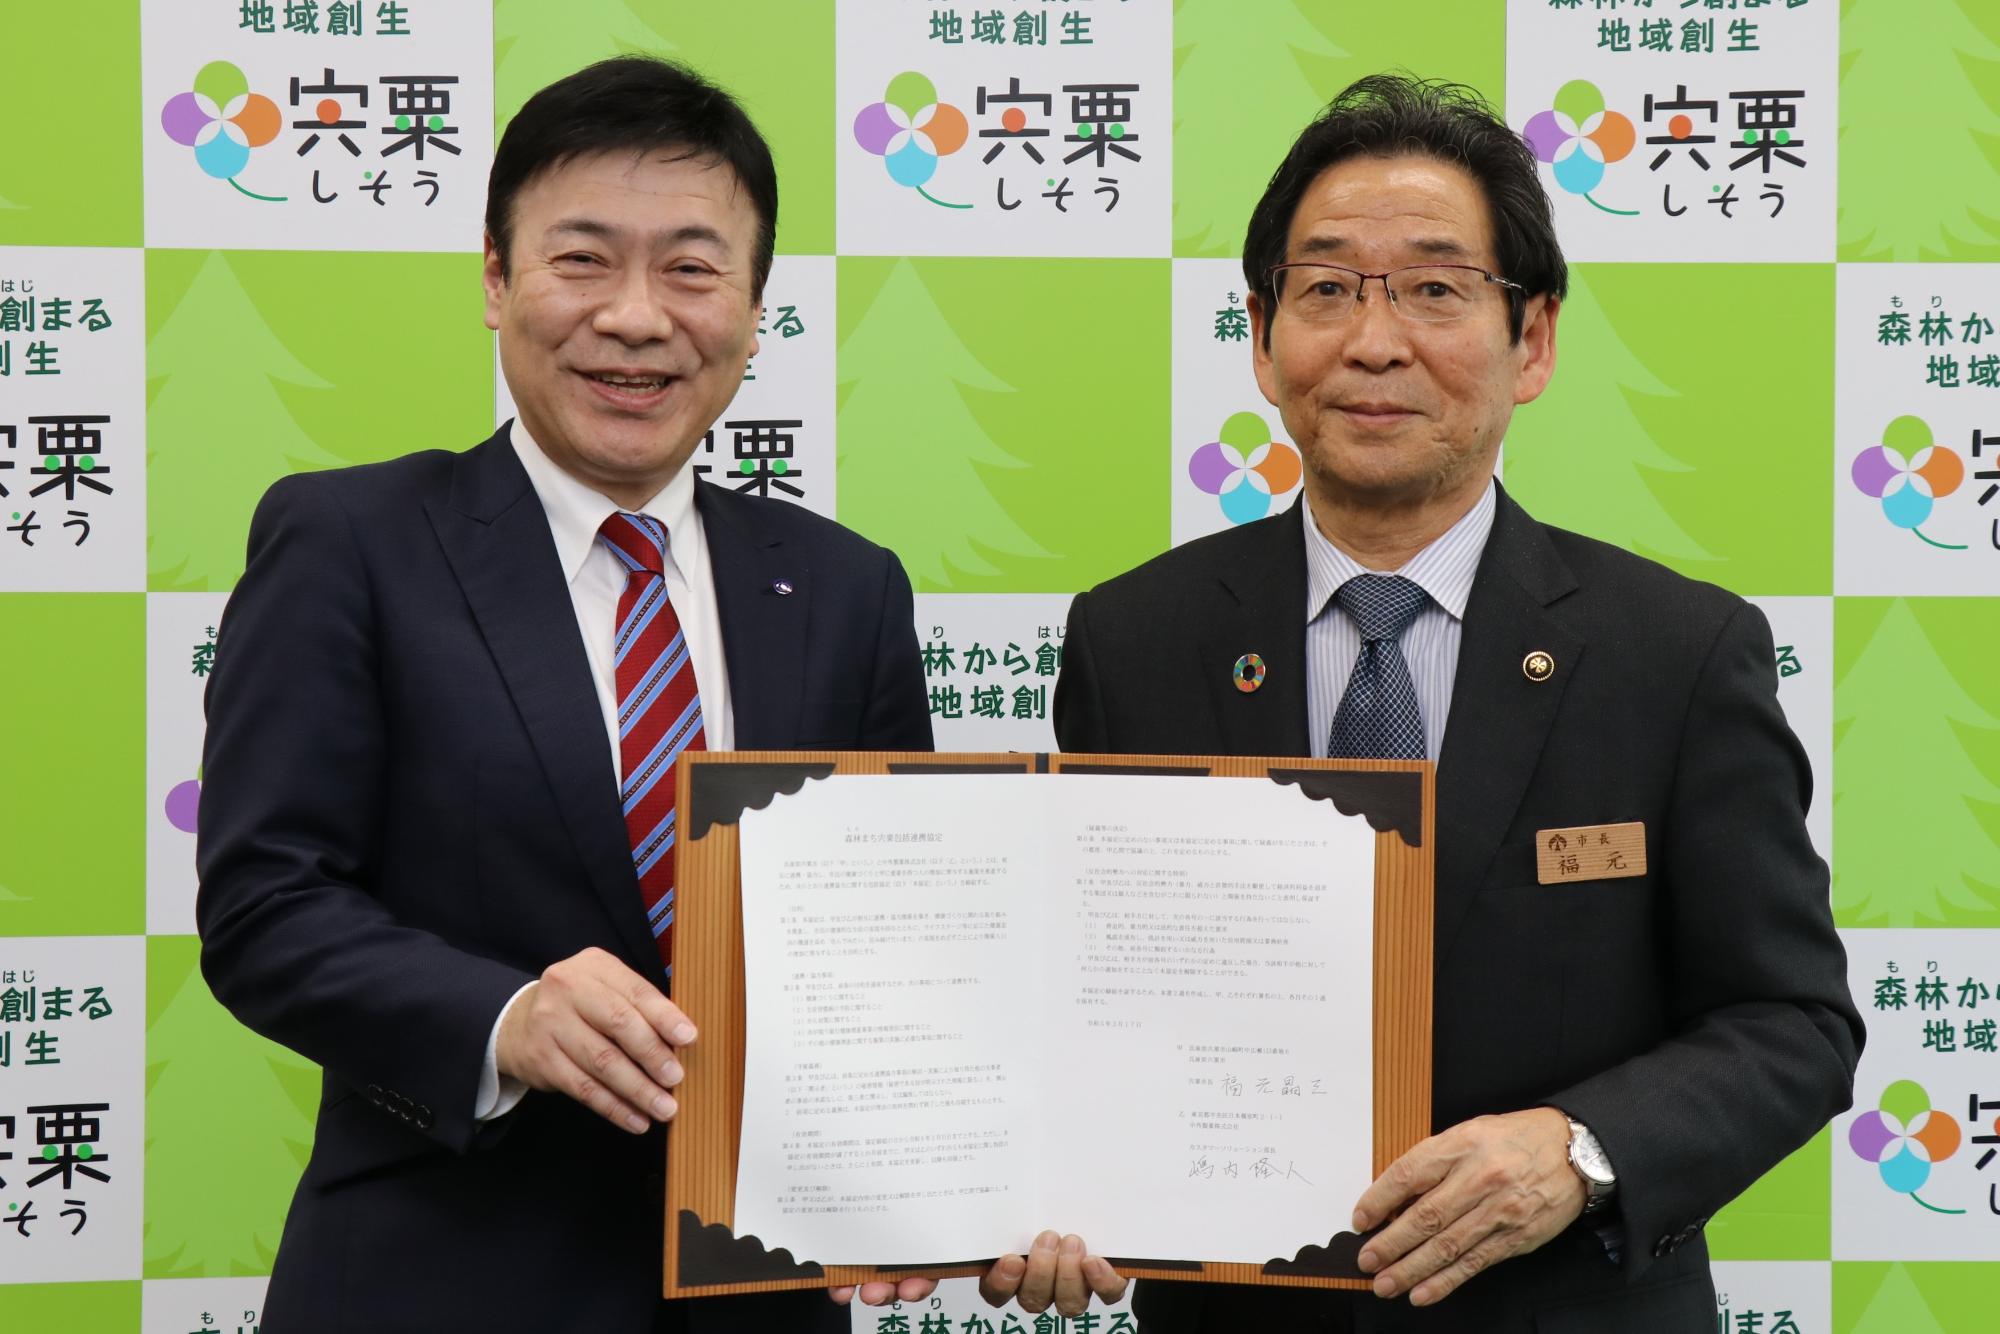 中外製薬の嶋内部長と福元市長が協定書を手に正面を向いている写真